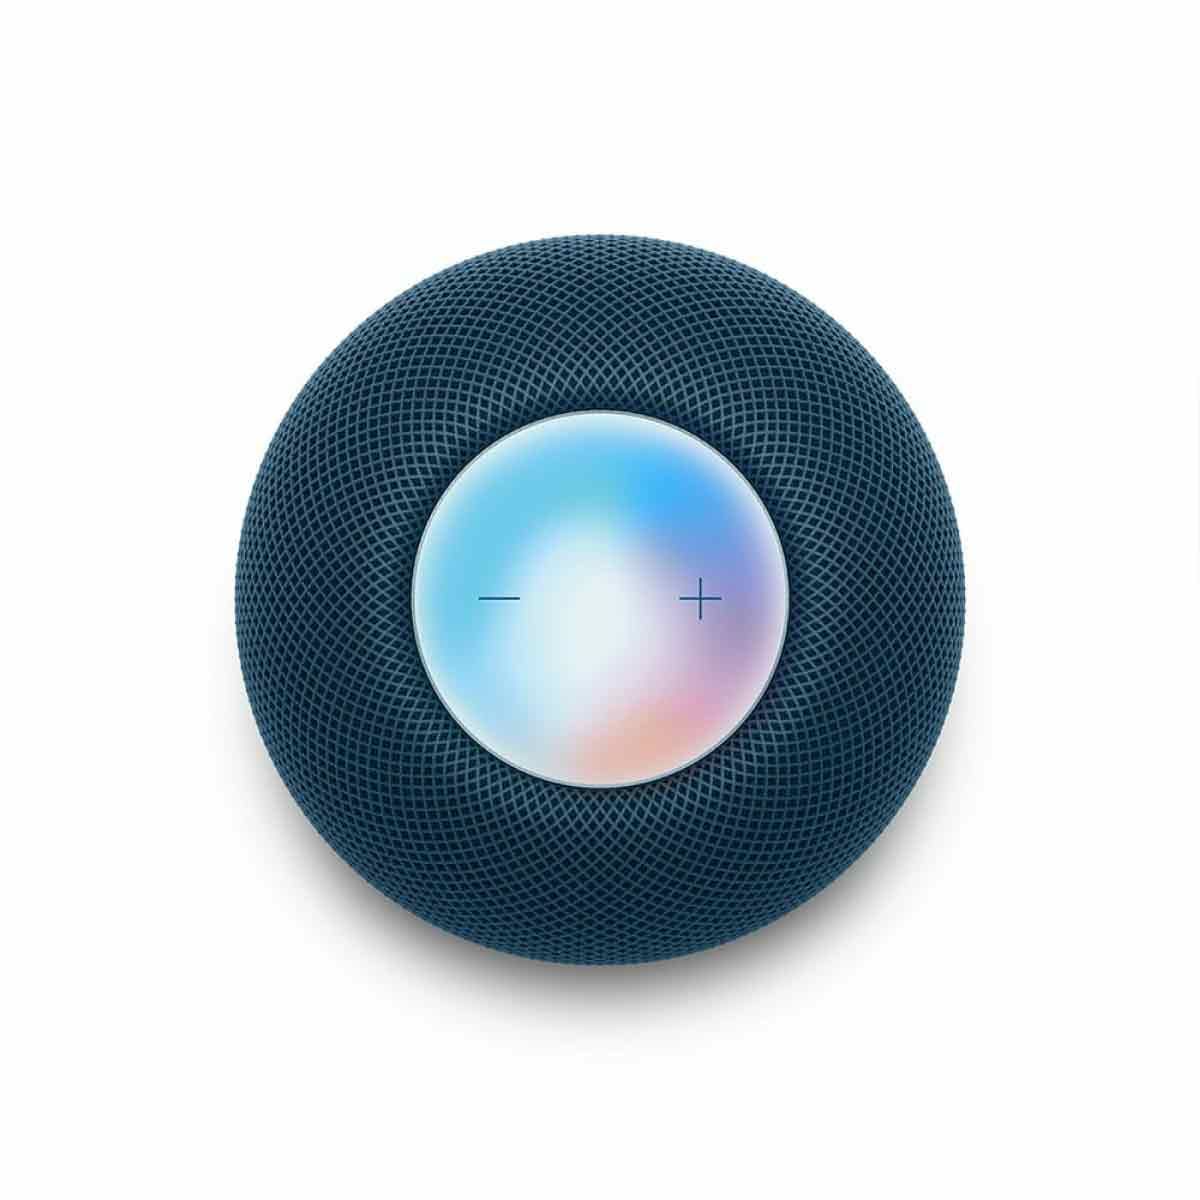 Apple HomePod mini - สีน้ำเงิน